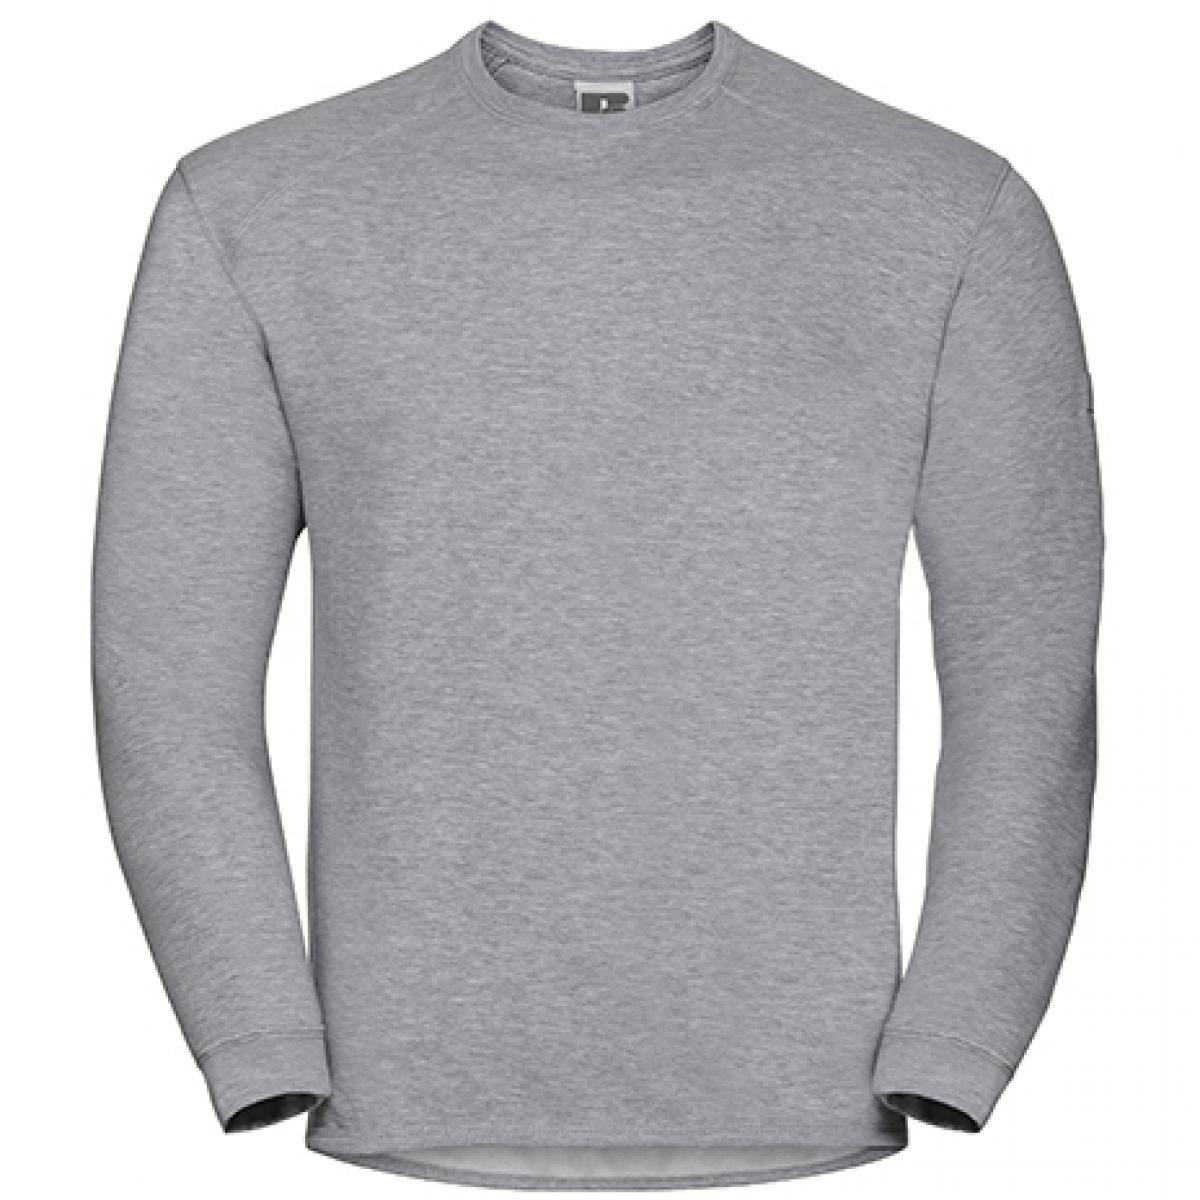 Hersteller: Russell Herstellernummer: R-013M-0 Artikelbezeichnung: Workwear-Sweatshirt / Pullover Farbe: Light Oxford (Heather)